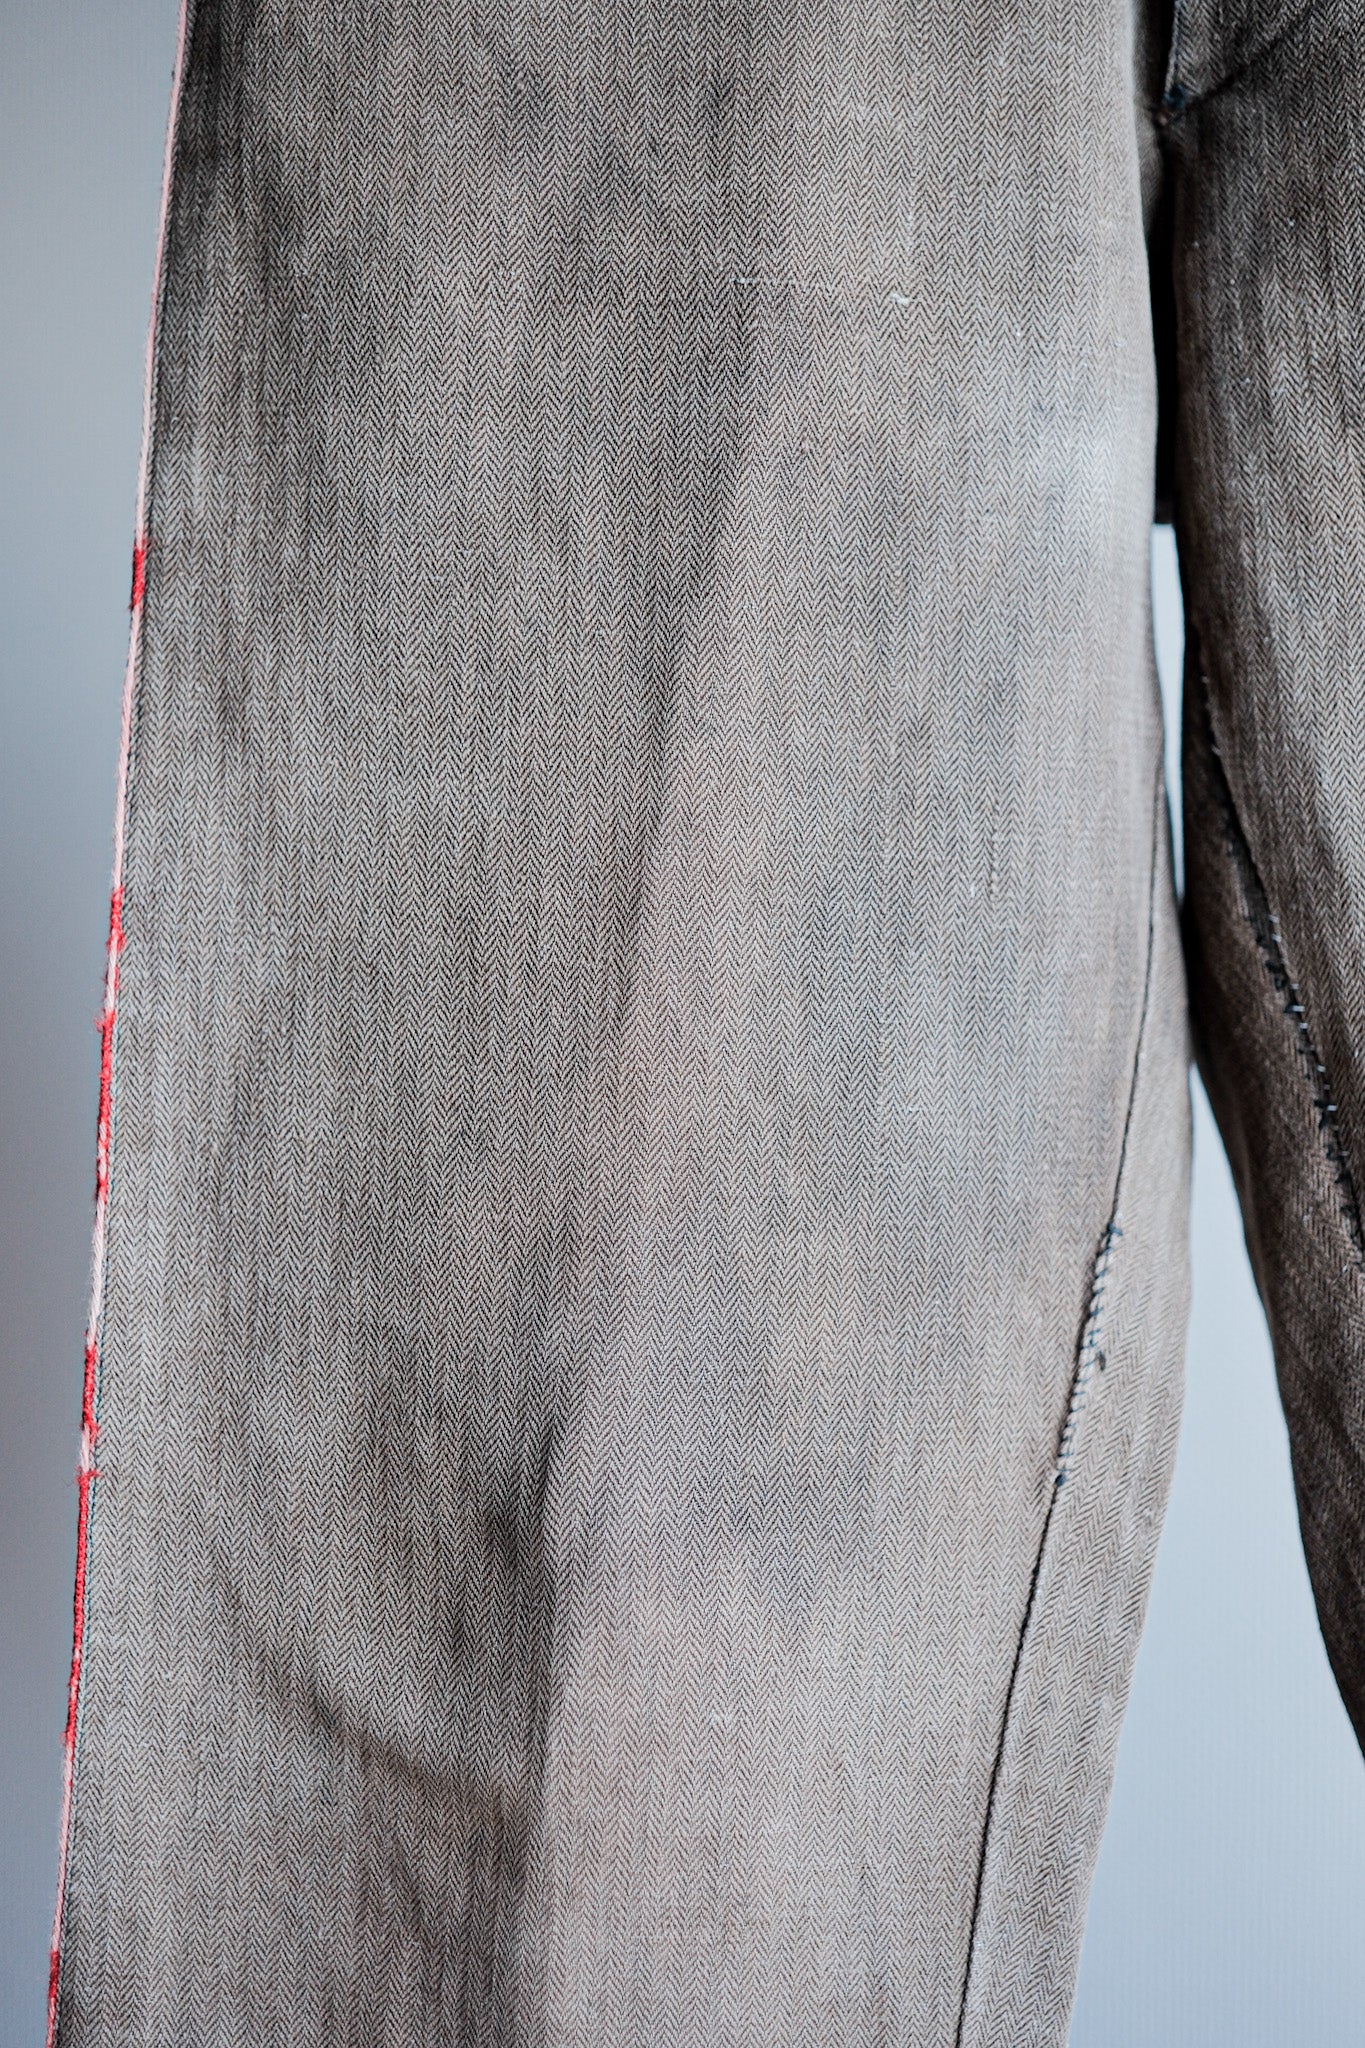 [ปลายปีที่ 19 C] กางเกงนักดับเพลิงผ้าปูที่นอนสีน้ำตาล HBT โบราณของฝรั่งเศส